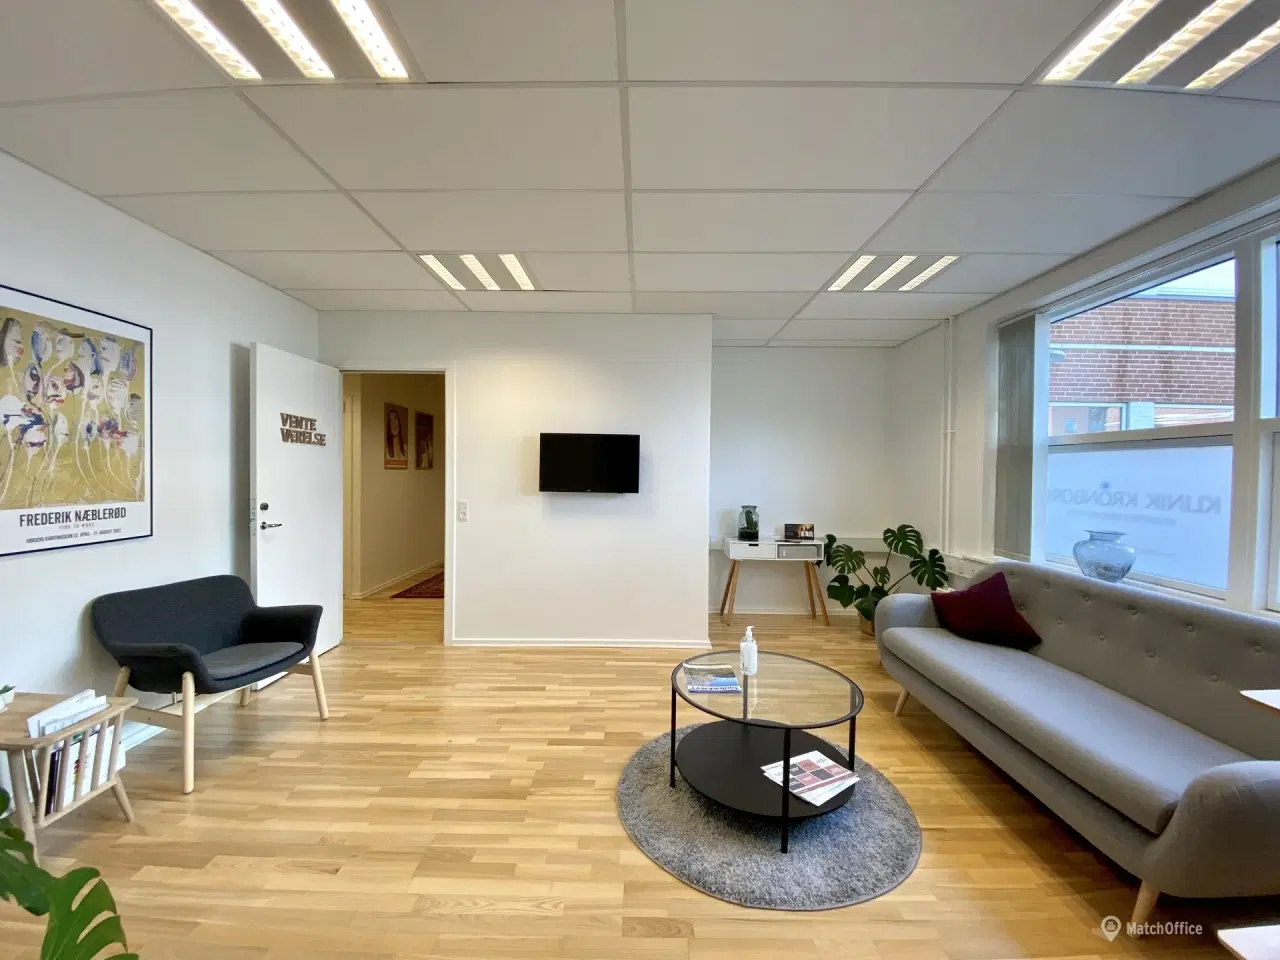 Billede 5 - 112 m² kontor/klinik lokale i velplaceret ejendom i Middelfart